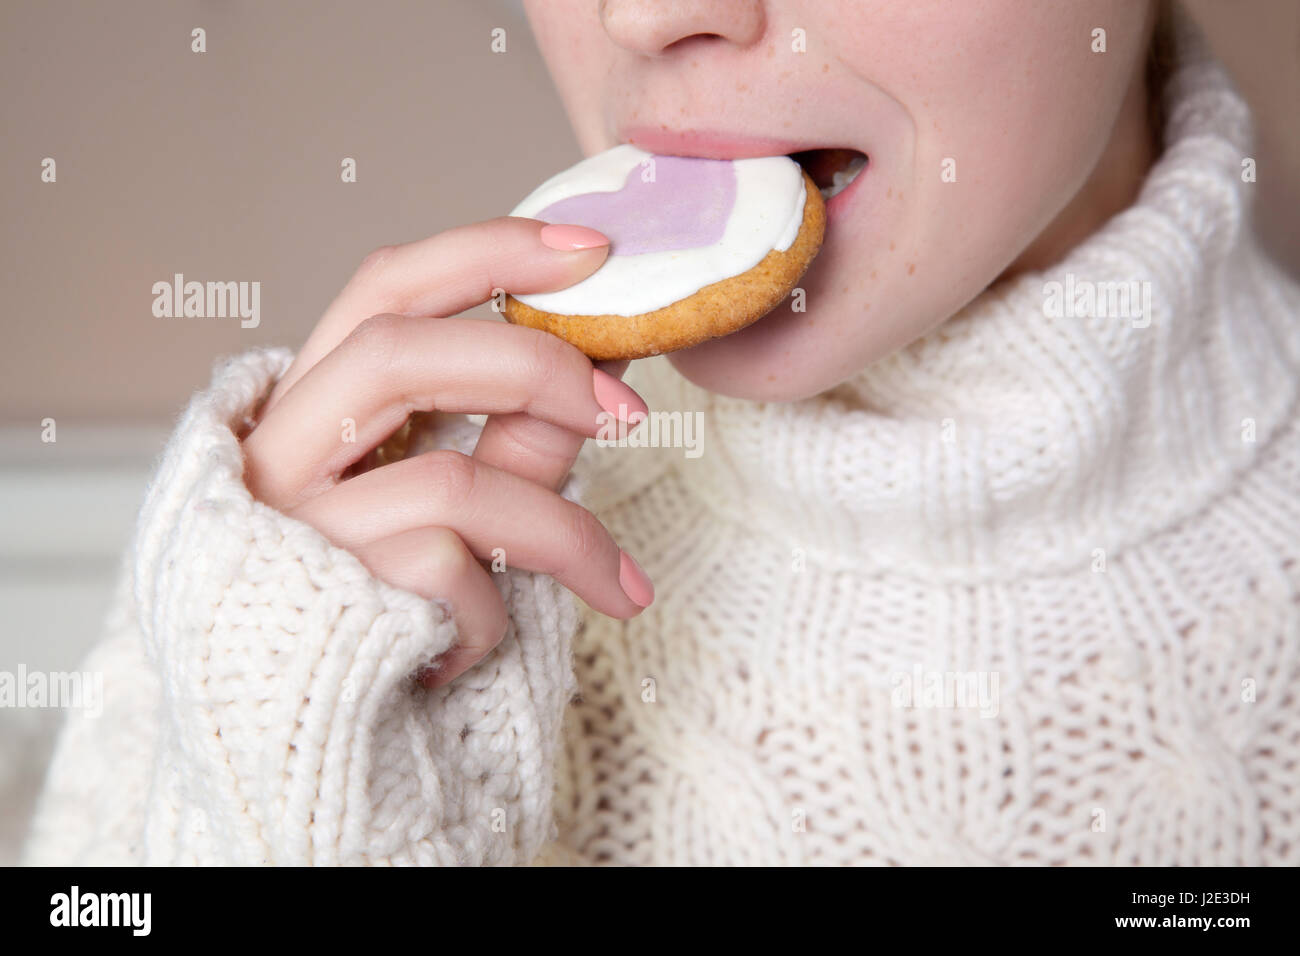 Mädchen beißt Scheibe Biskuit. Nahaufnahme der Frau mit weißer Pullover Keks in den Mund zu halten. Stockfoto